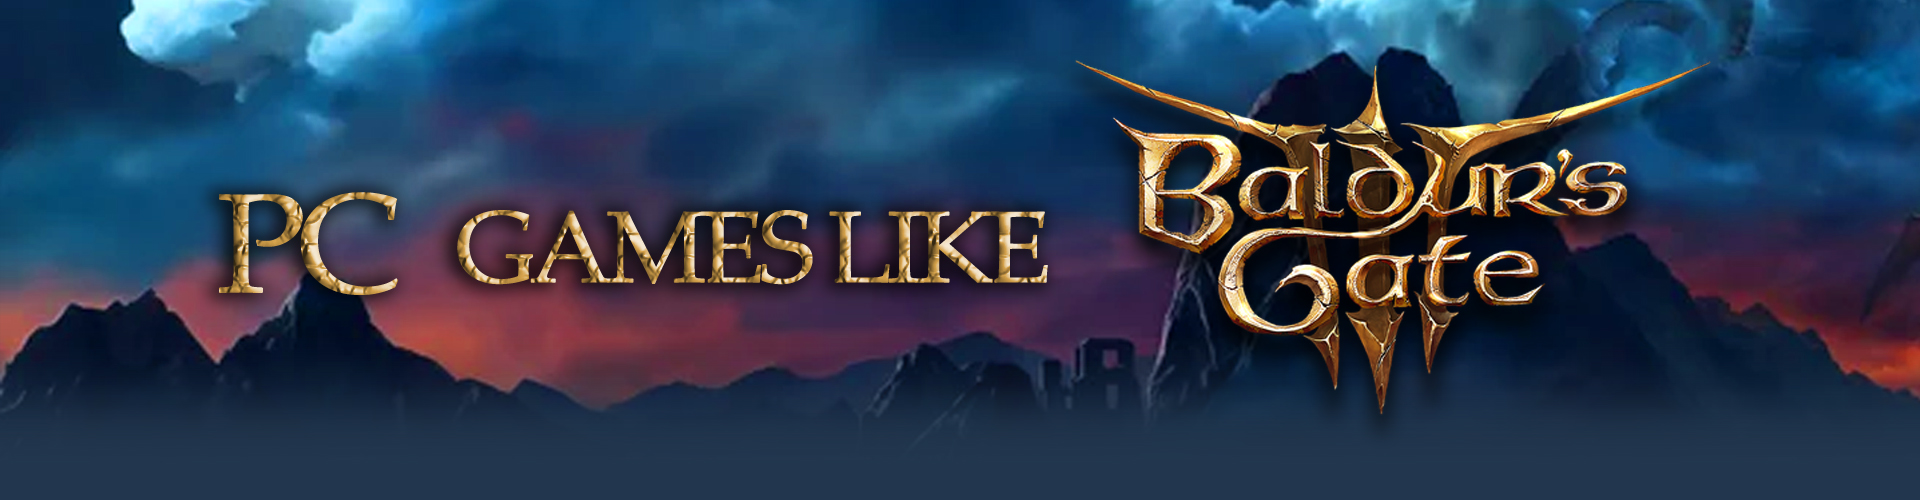 Le Top des jeux PC de Dark Fantasy comme Baldur's Gate 3